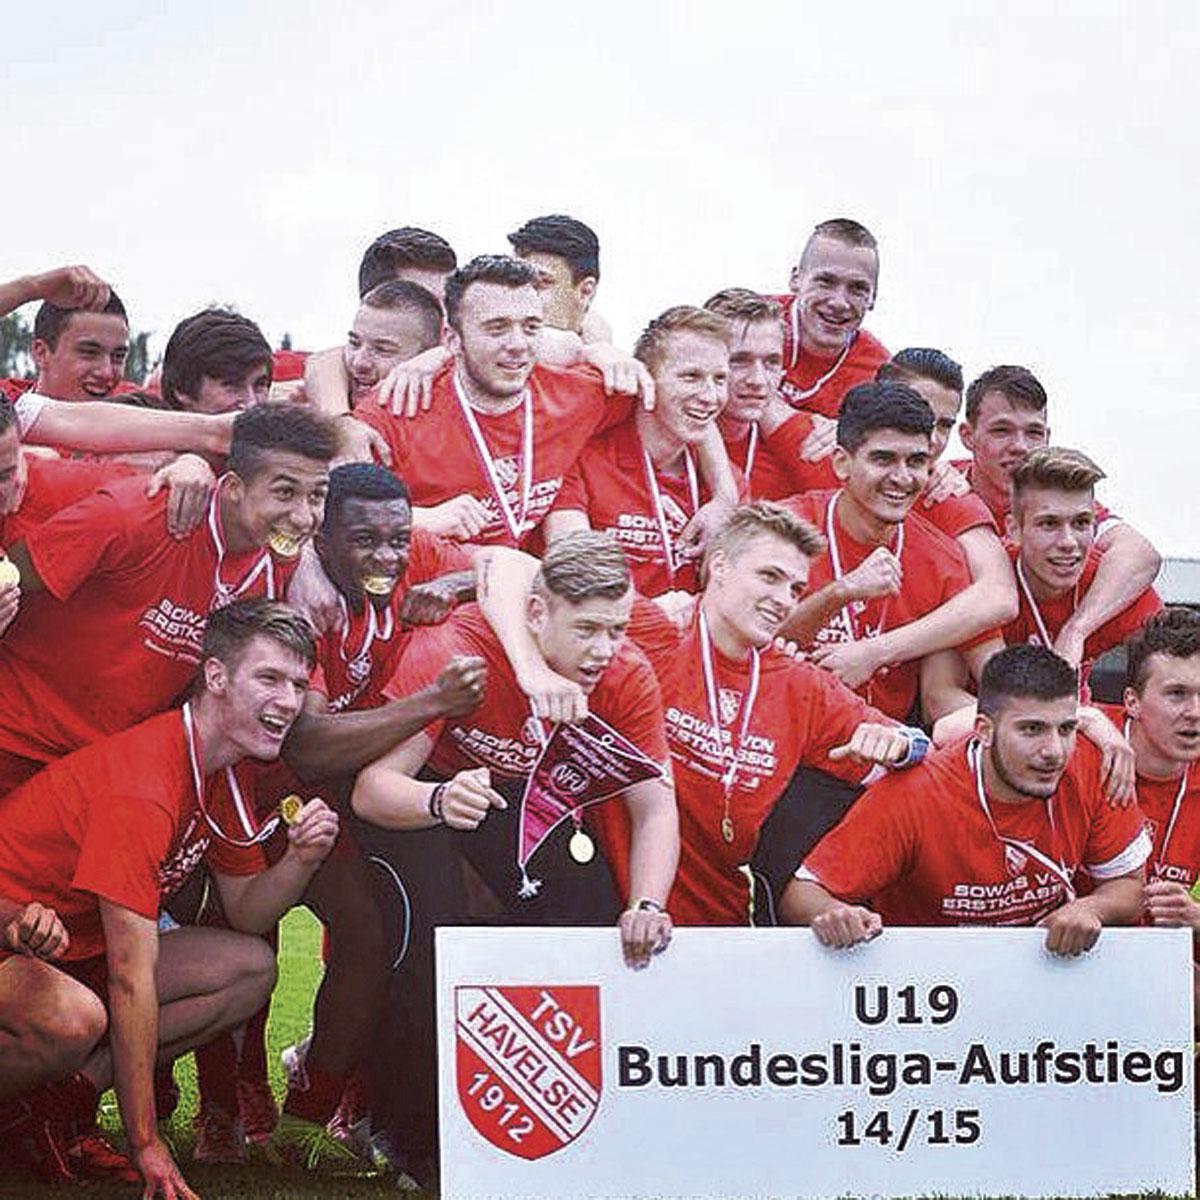 Undav bracht de U19 van Havelse naar de Bundesliga.